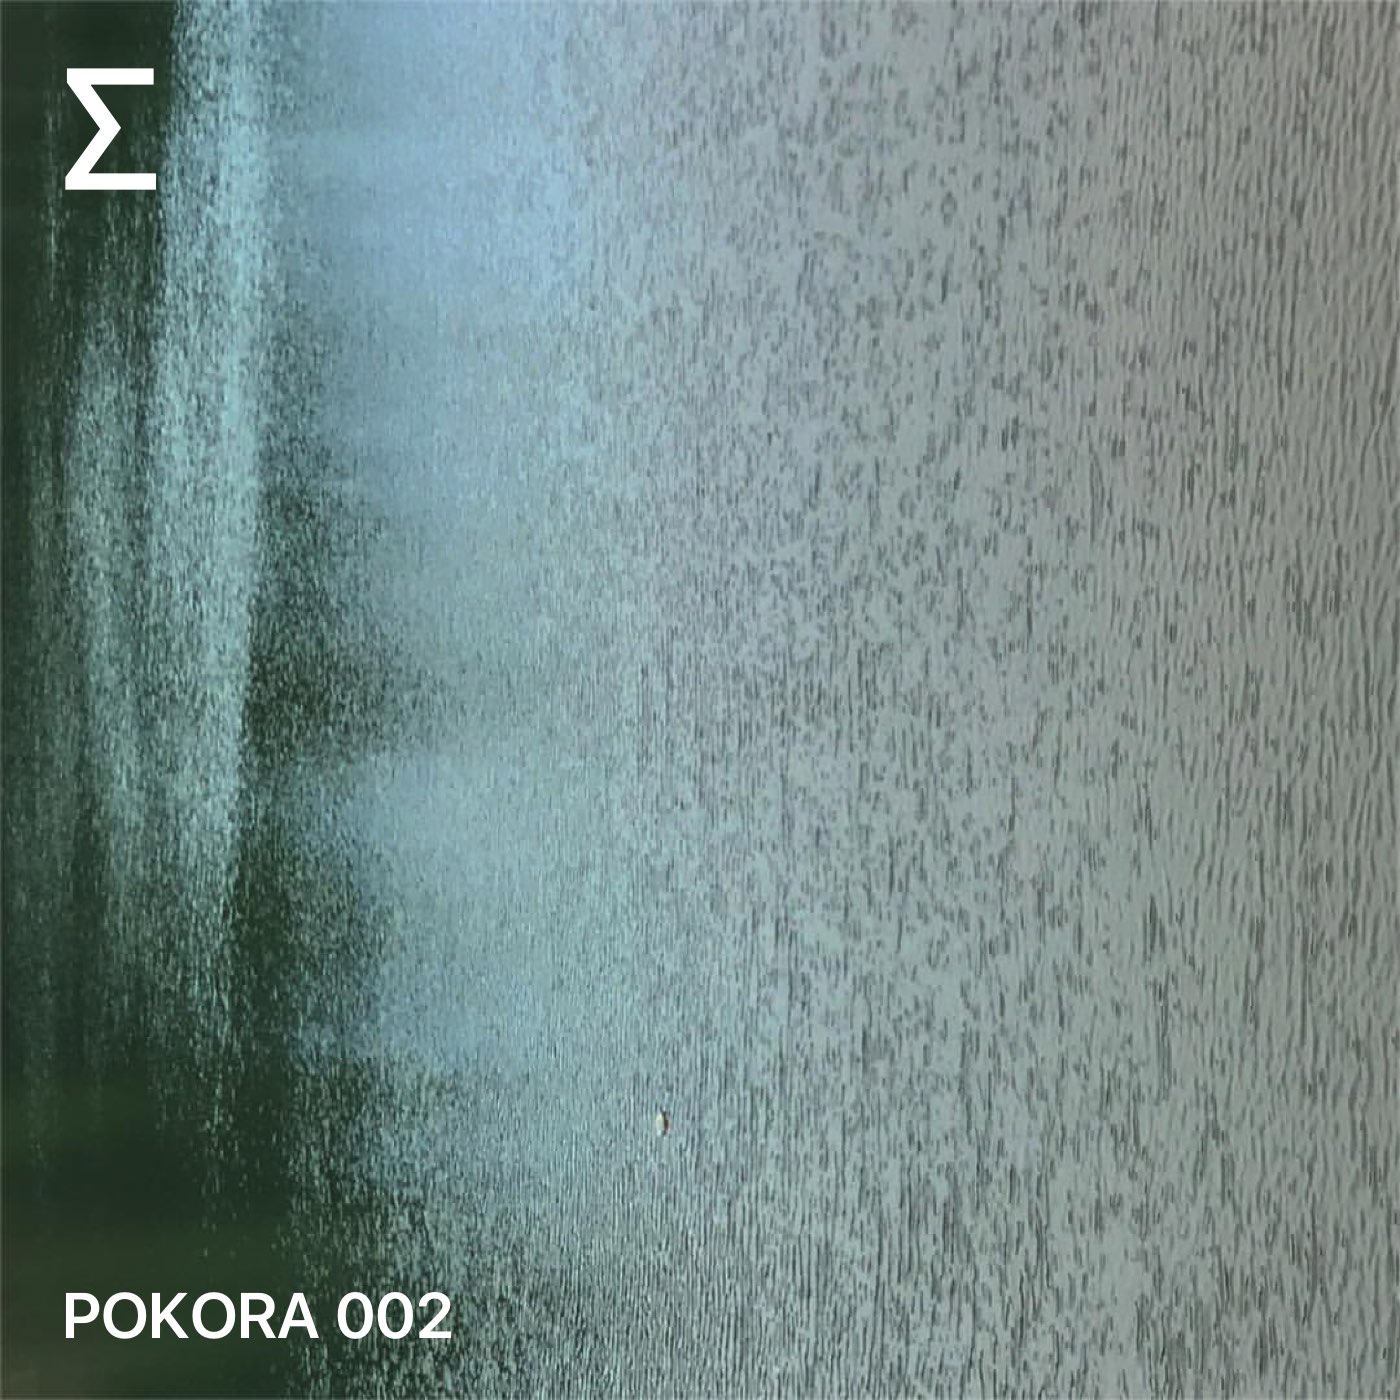 POKORA 002